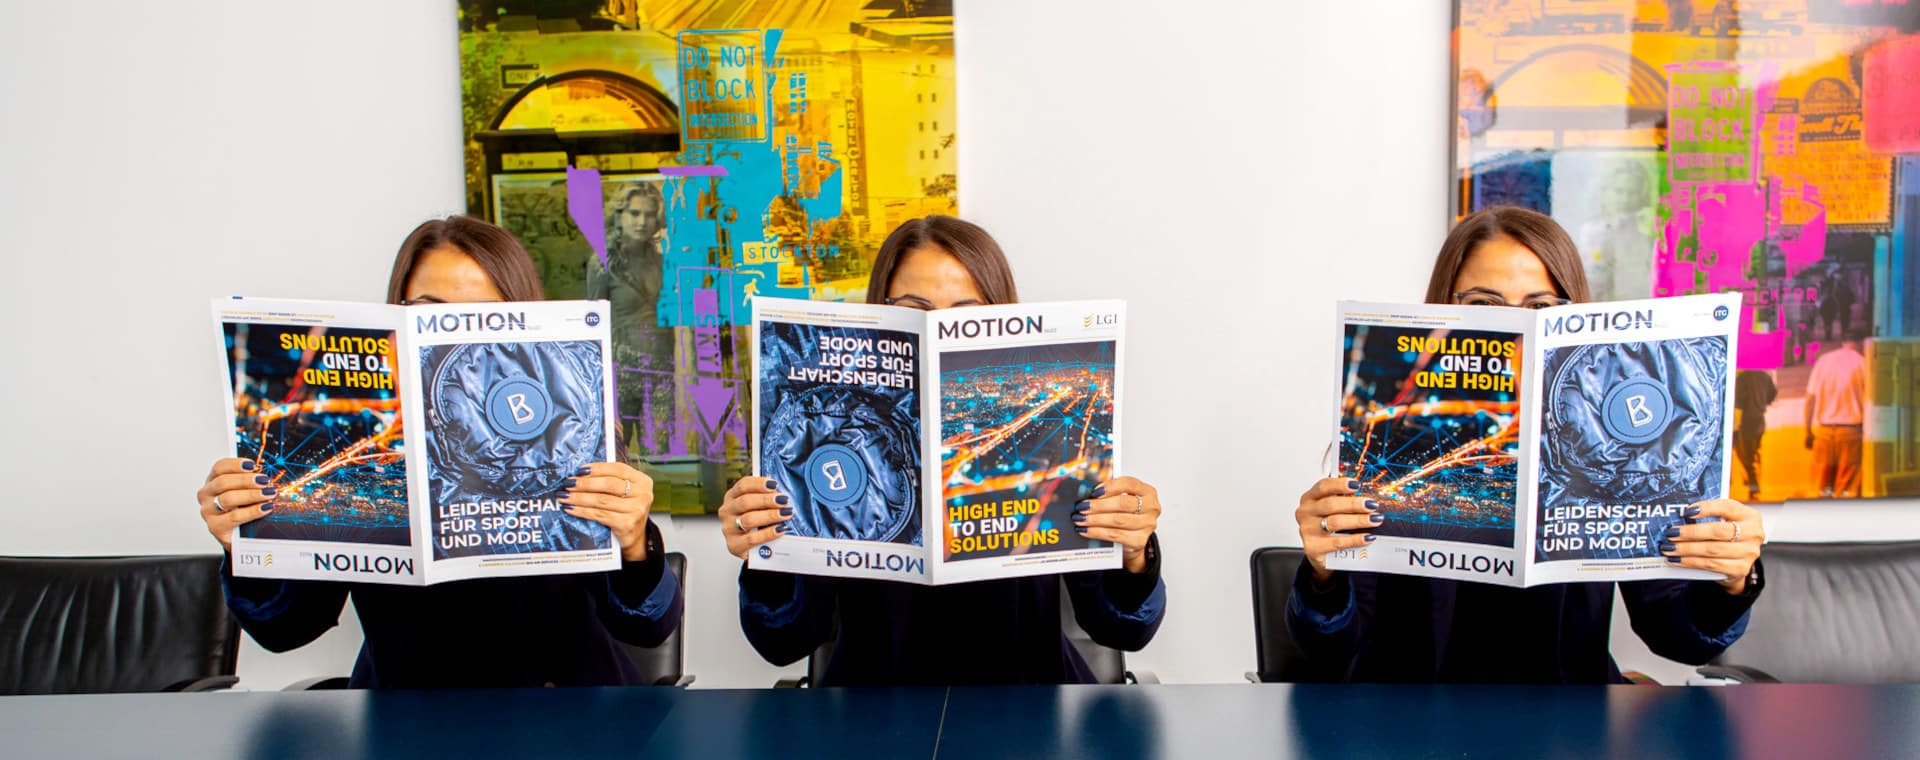 Drei Frauen sitzen mit dem ITG-Motion-Magazin in der Hand | LGI